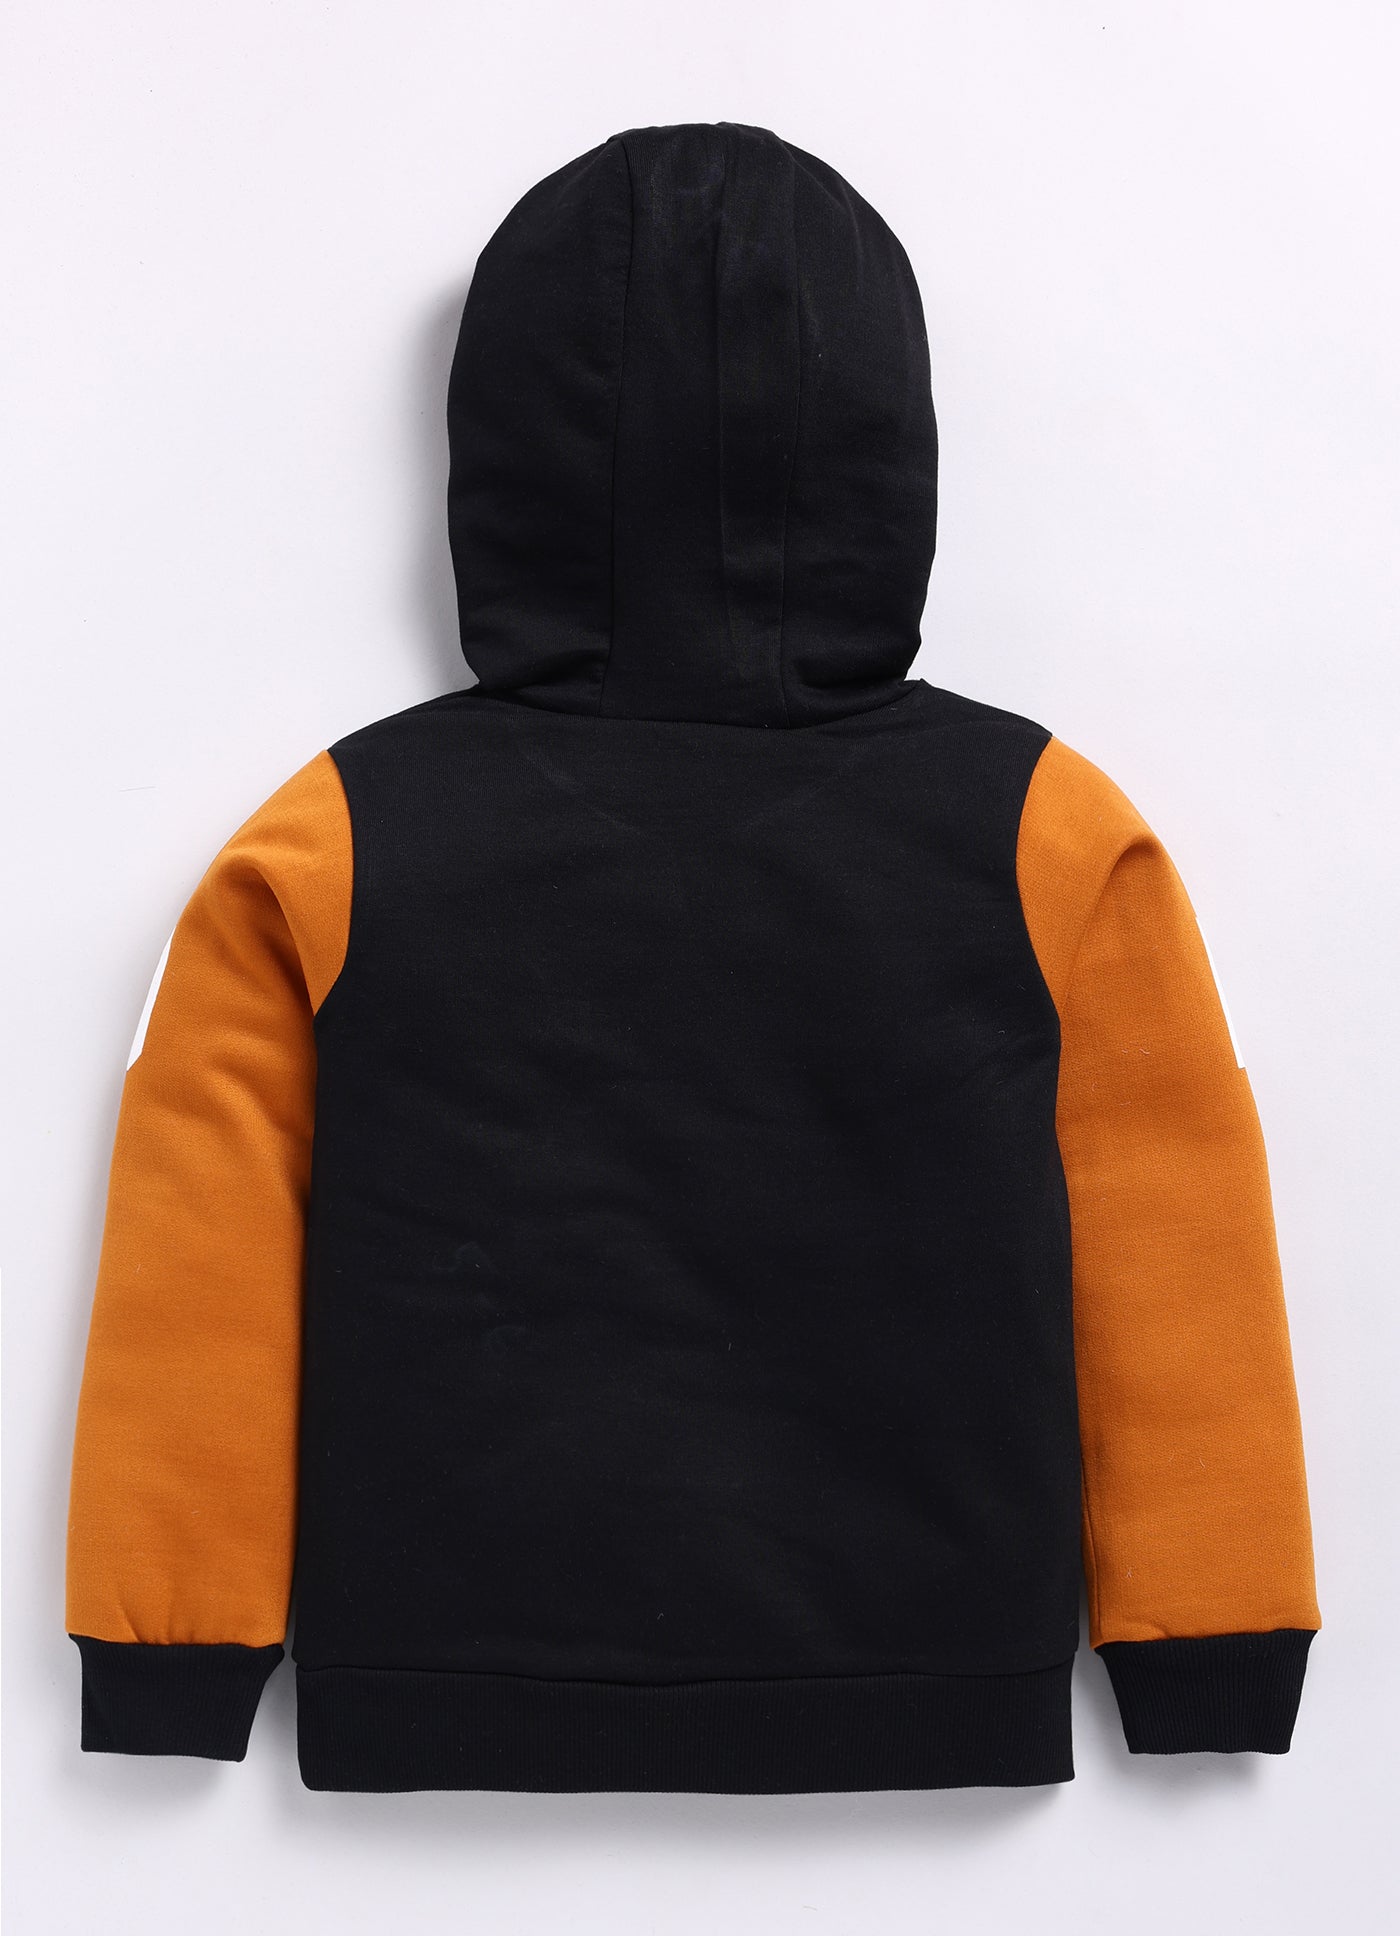 Mimino Full Sleeve Printed Baby Boys Sweatshirt- Brown & Black